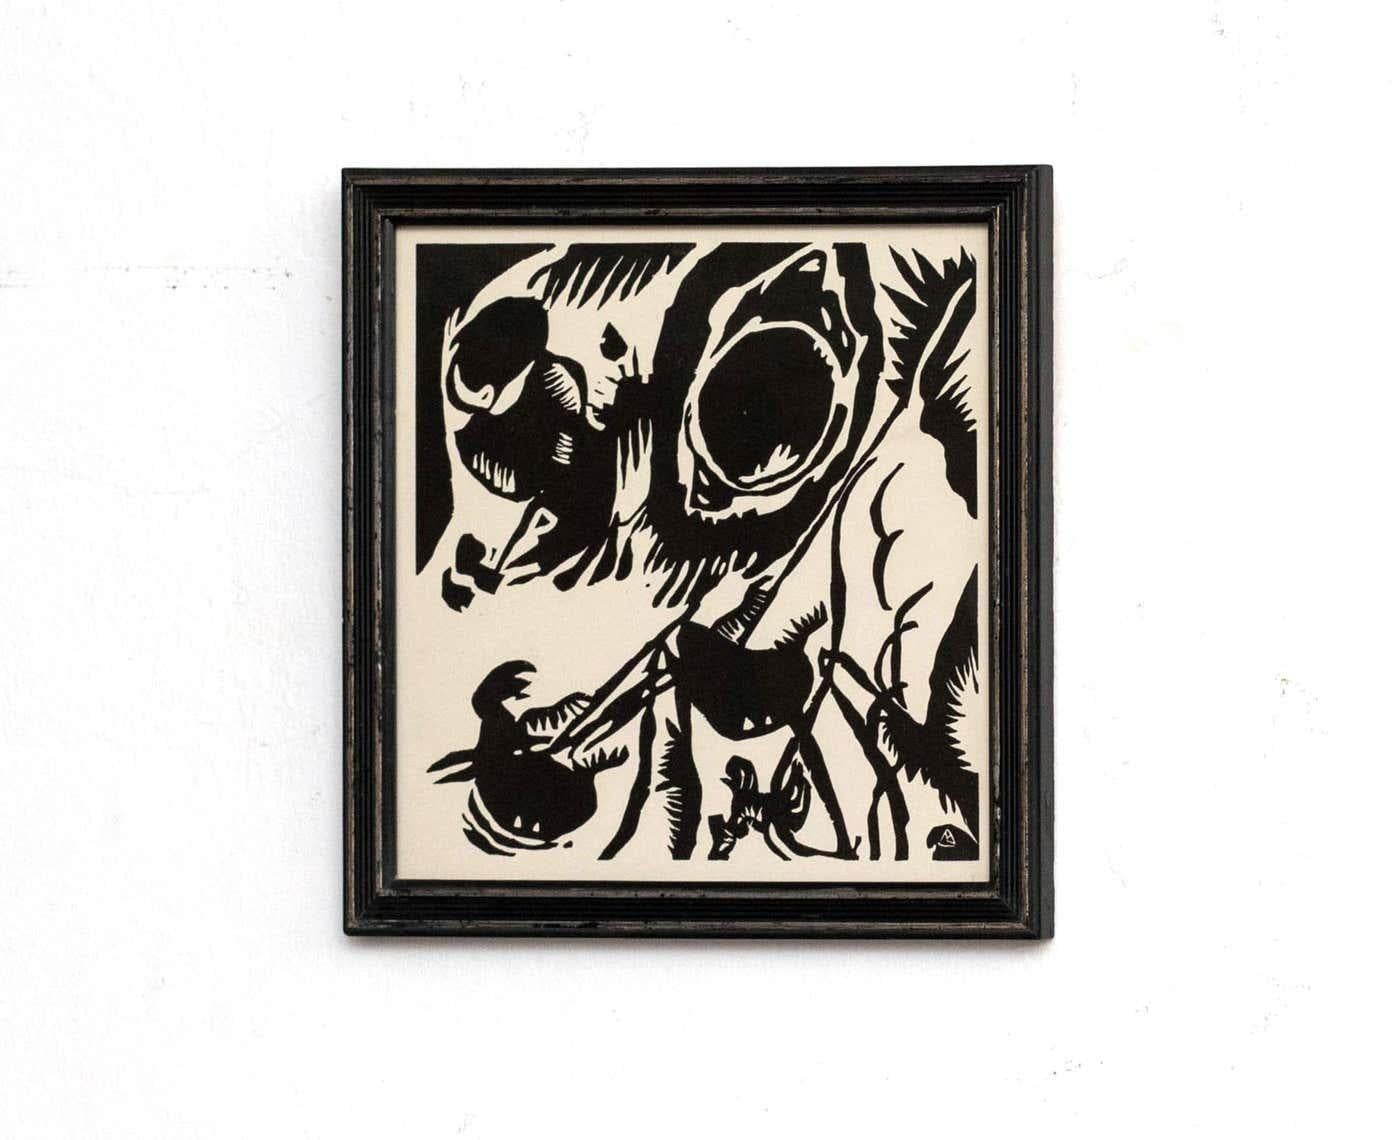 Werten Sie Ihre Kunstsammlung mit einem fesselnden Holzschnitt des meisterhaften Wassily Kandinsky auf. Dieses exquisite Stück, das auf der Platte vom Künstler signiert ist, strahlt eine zeitlose Anziehungskraft aus, die über sein unbekanntes